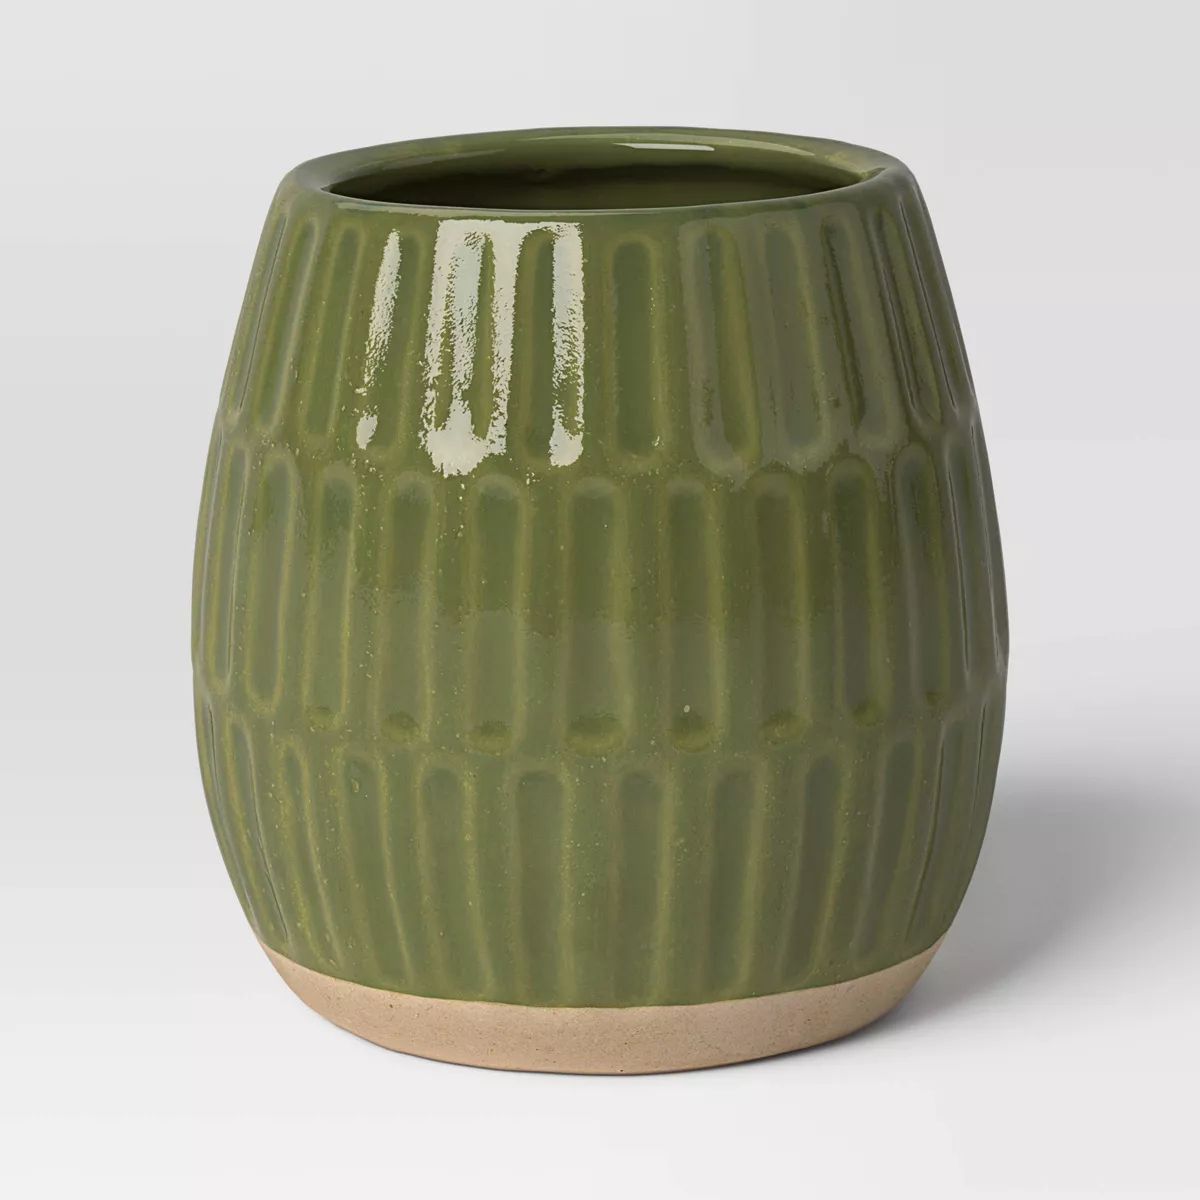 Reactive Glaze Ceramic Indoor Outdoor Planter Pot - Threshold™ | Target